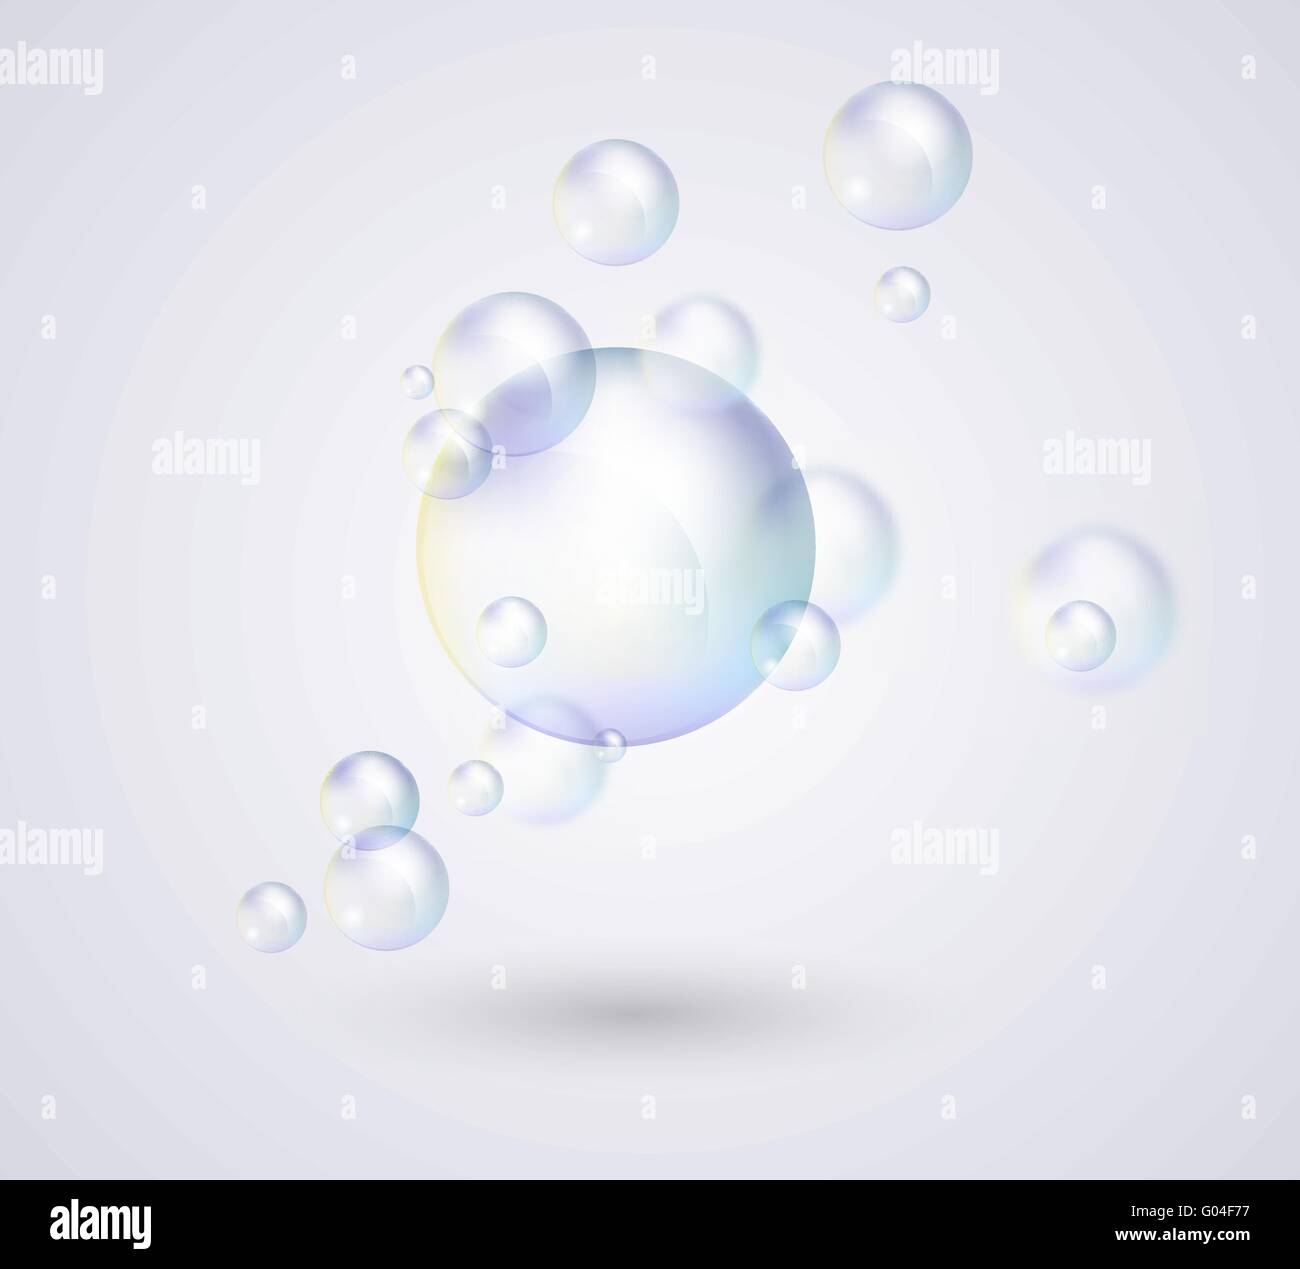 Transparent soap bubbles, vector Stock Vector